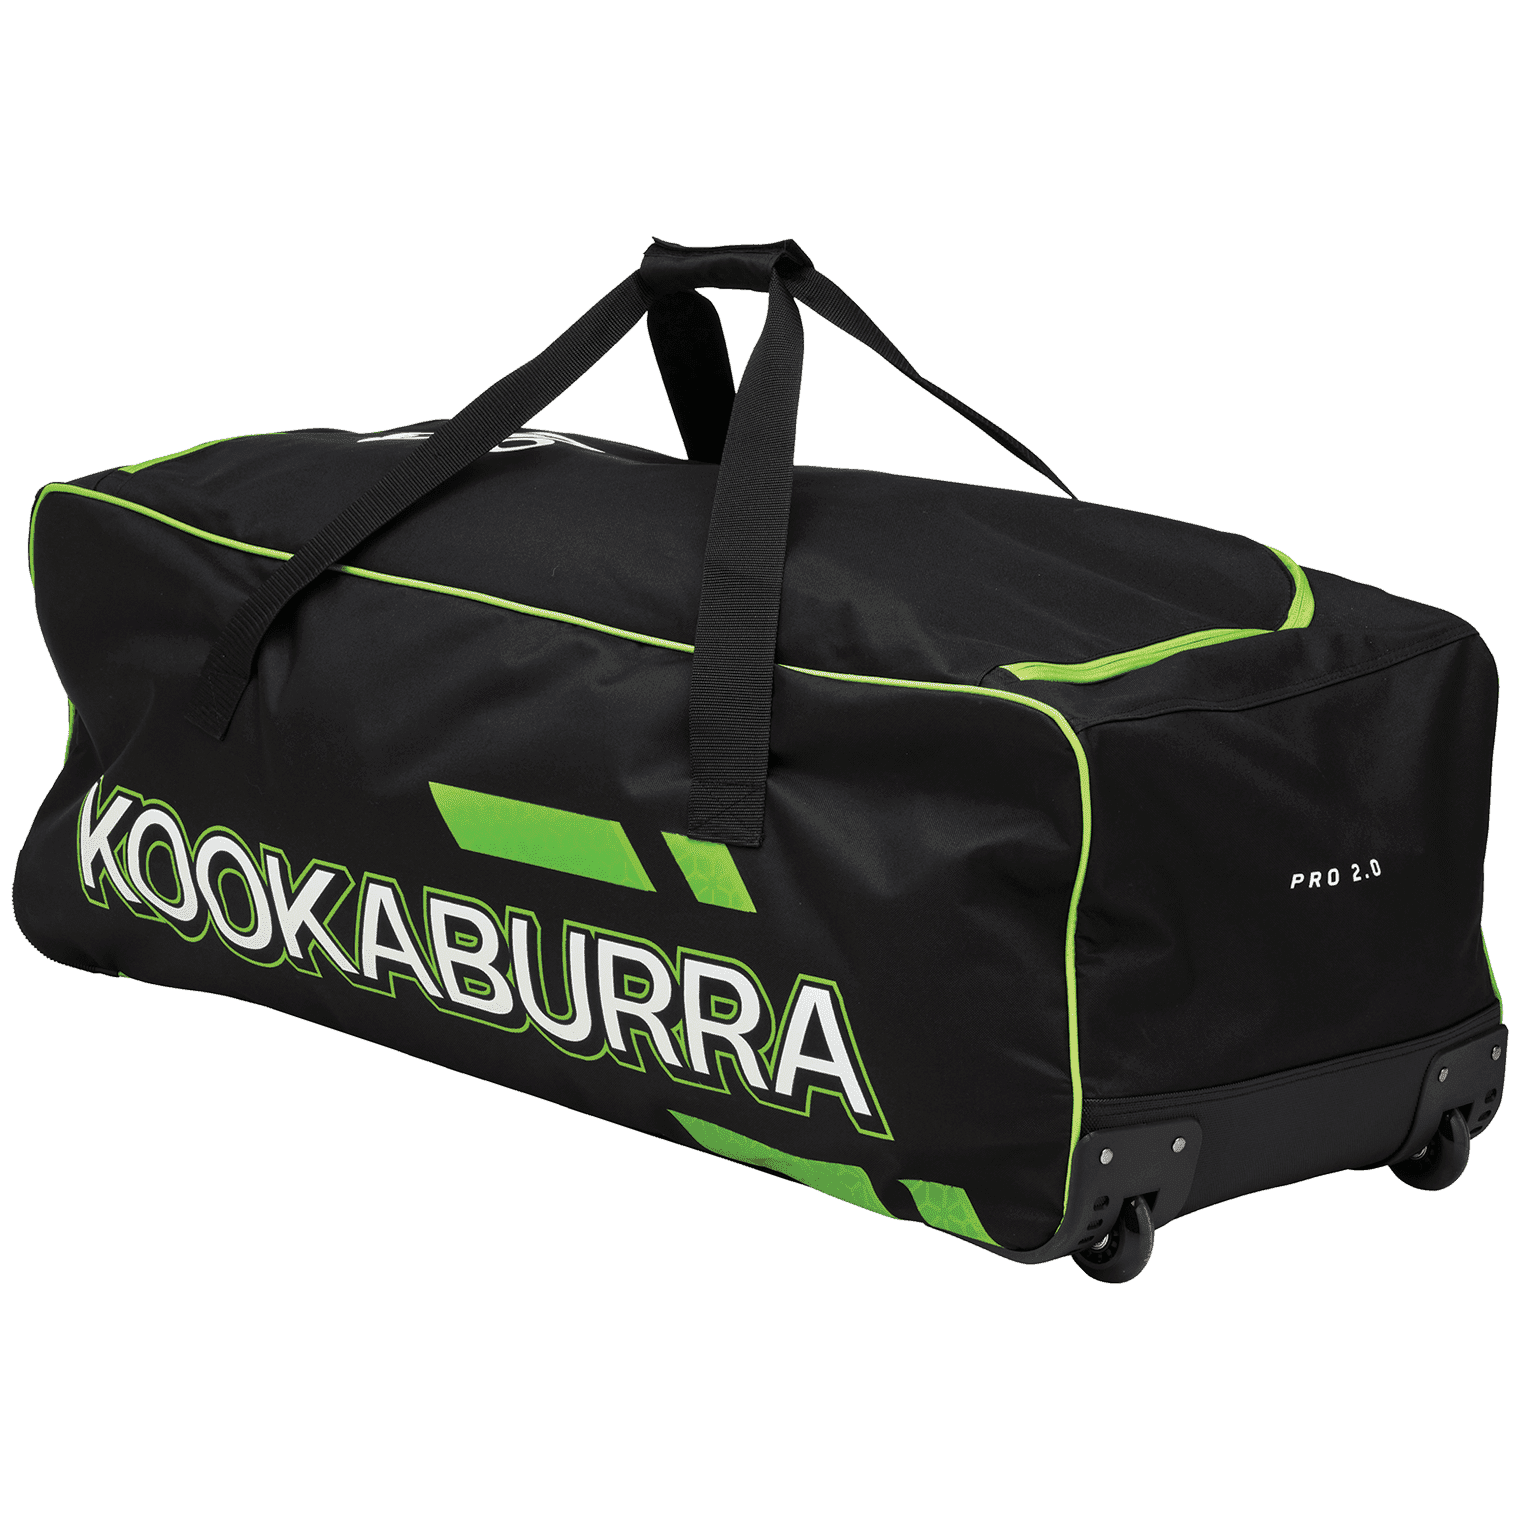 Kookaburra Cricket Bags Lime Kookaburra 2.0 Wheelie Cricket Bag